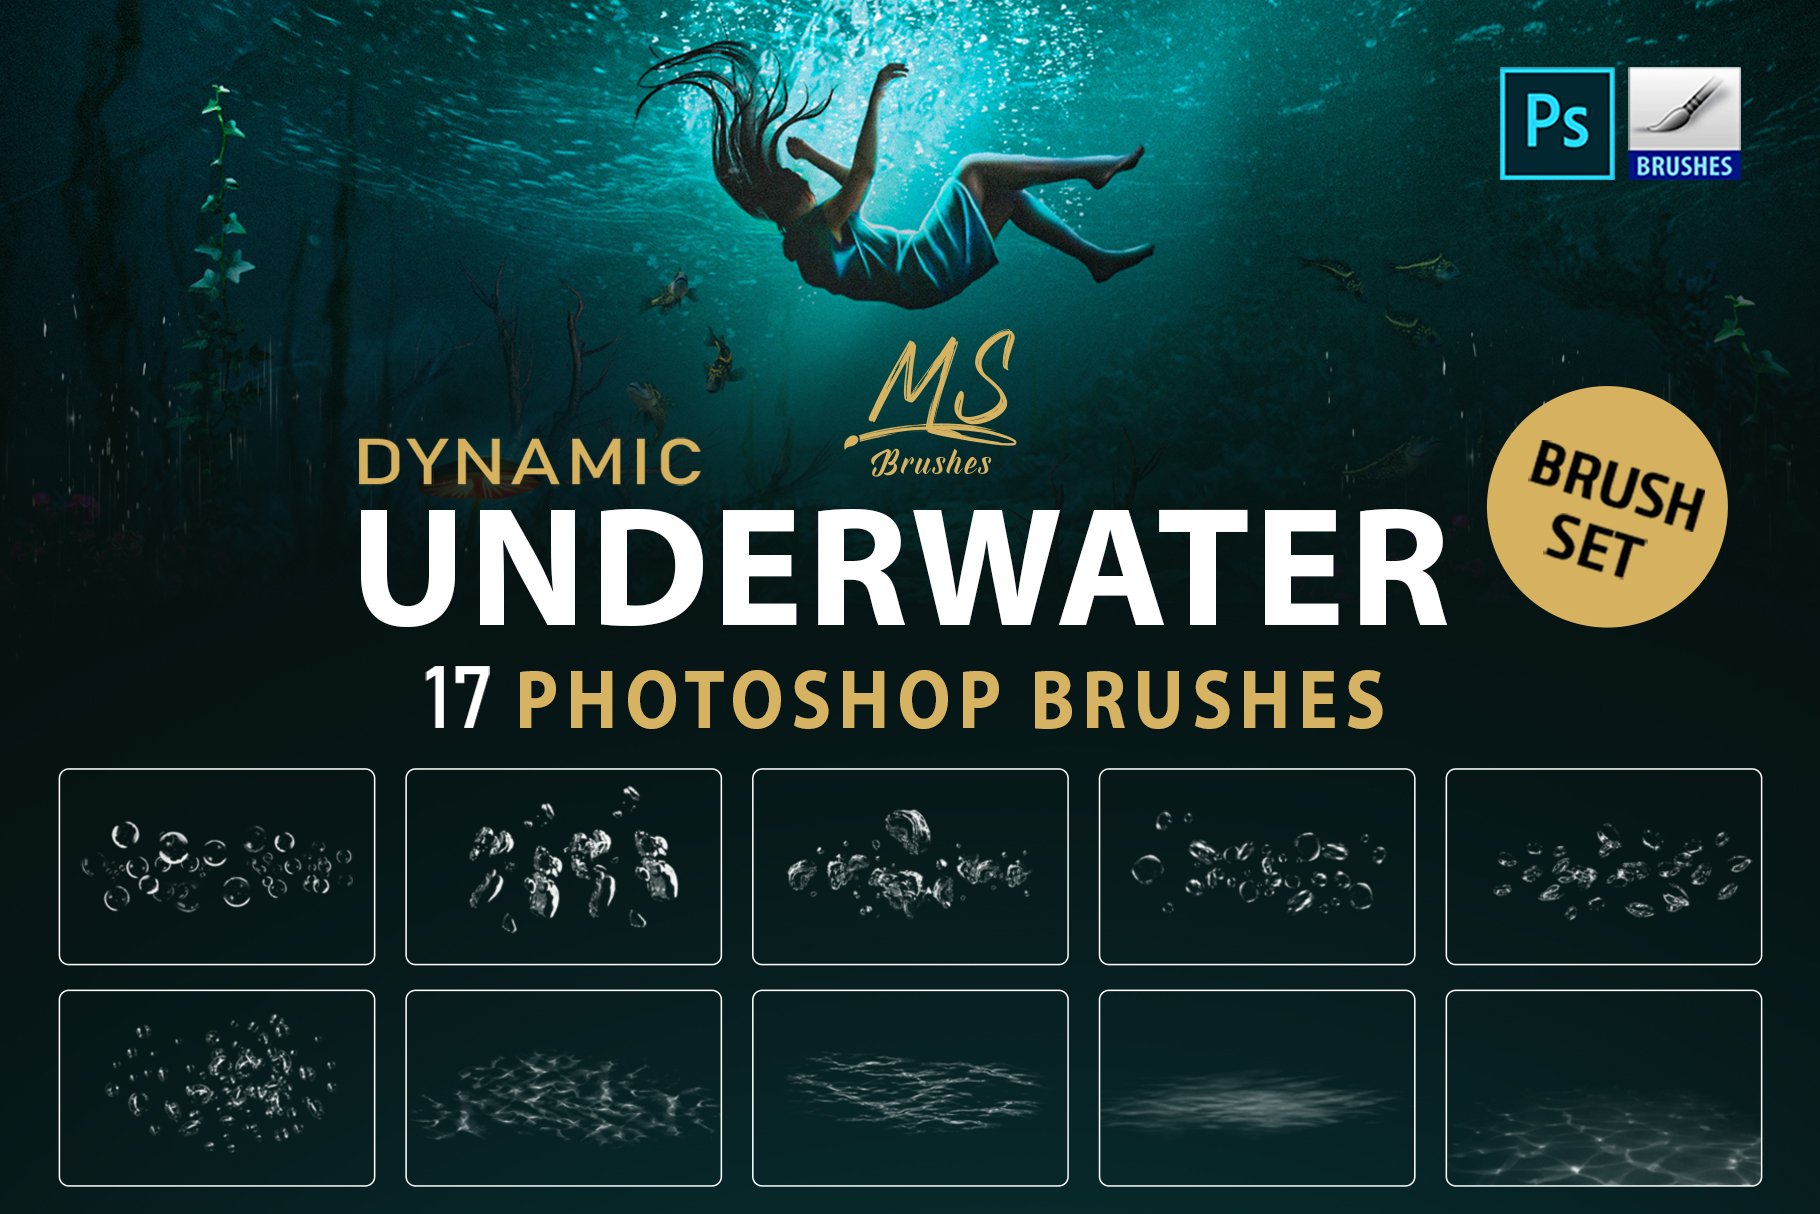 Underwater Photoshop Brushescover image.